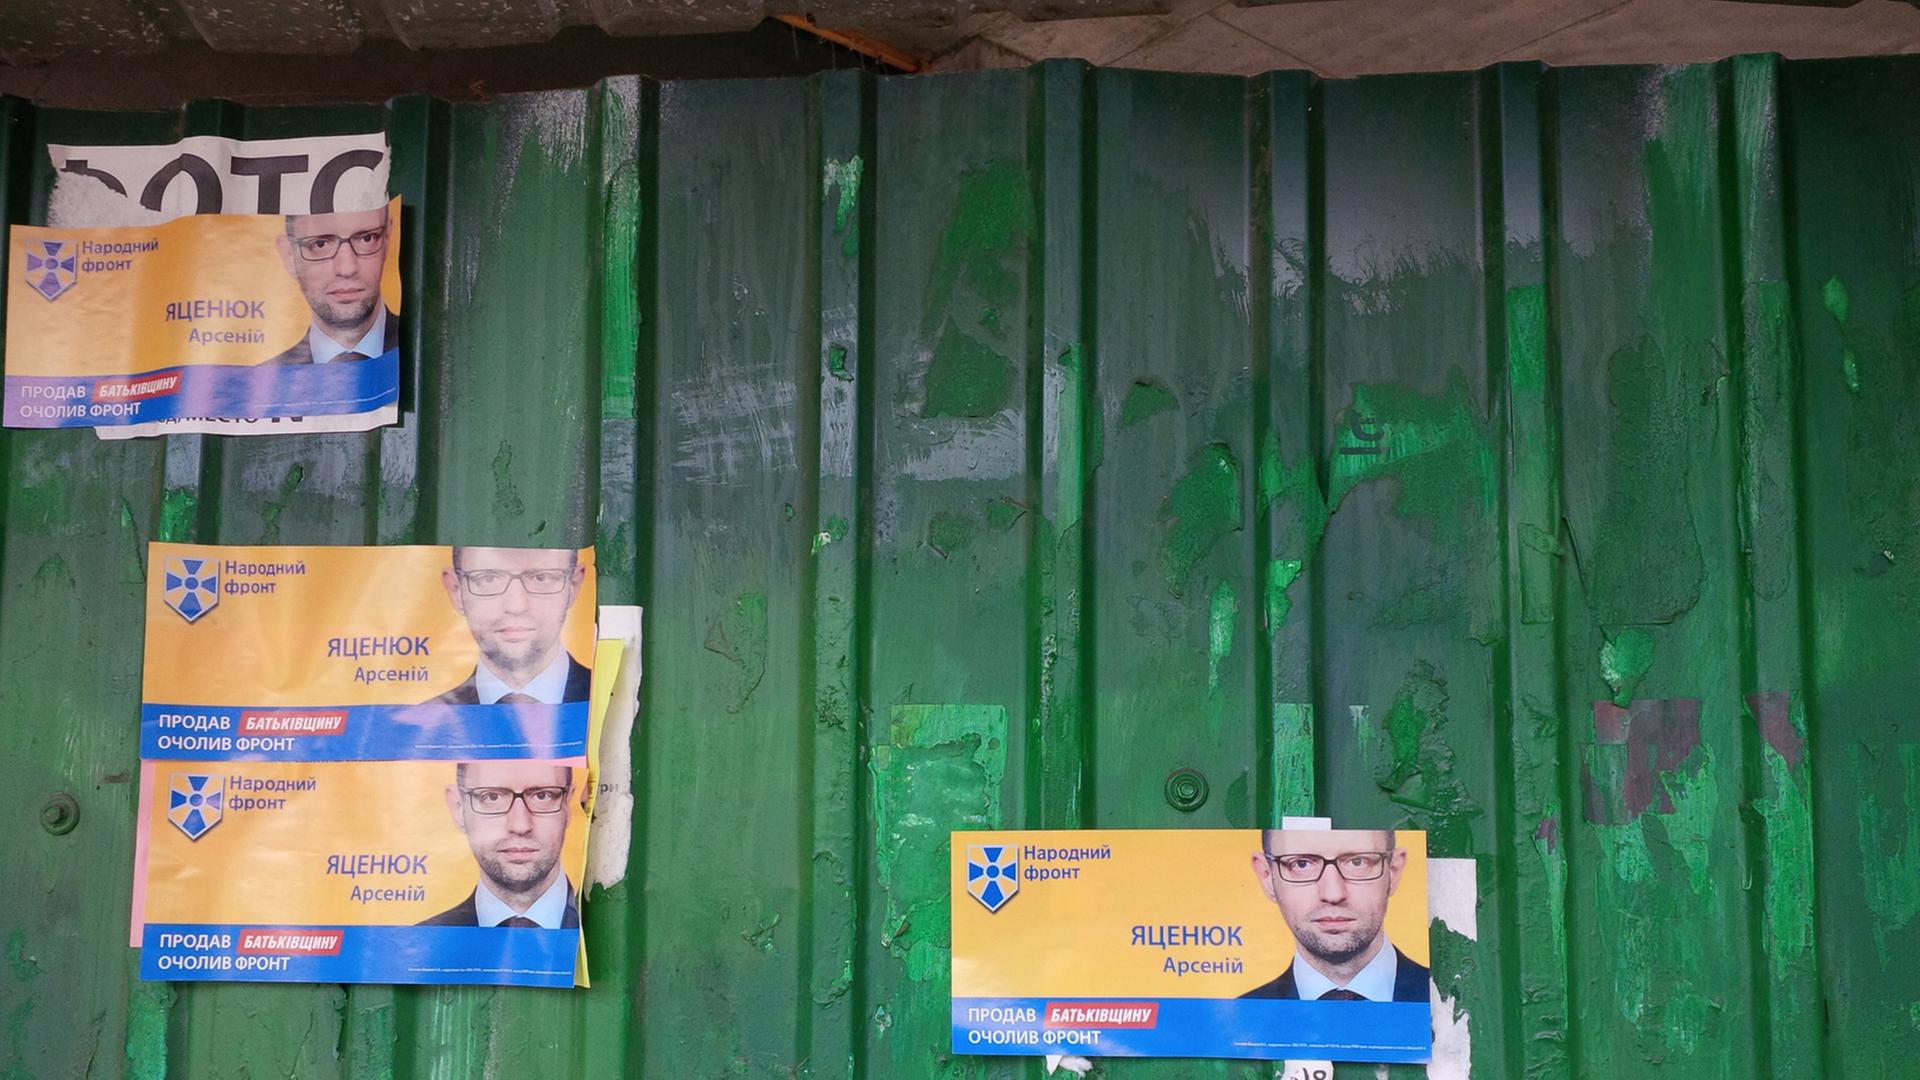 Mehrere kleine Plakate, auf denen der ukrainische Ministerpräsident Arsenij Jazenjuk zu sehen ist, kleben an einem grünen Zaun.